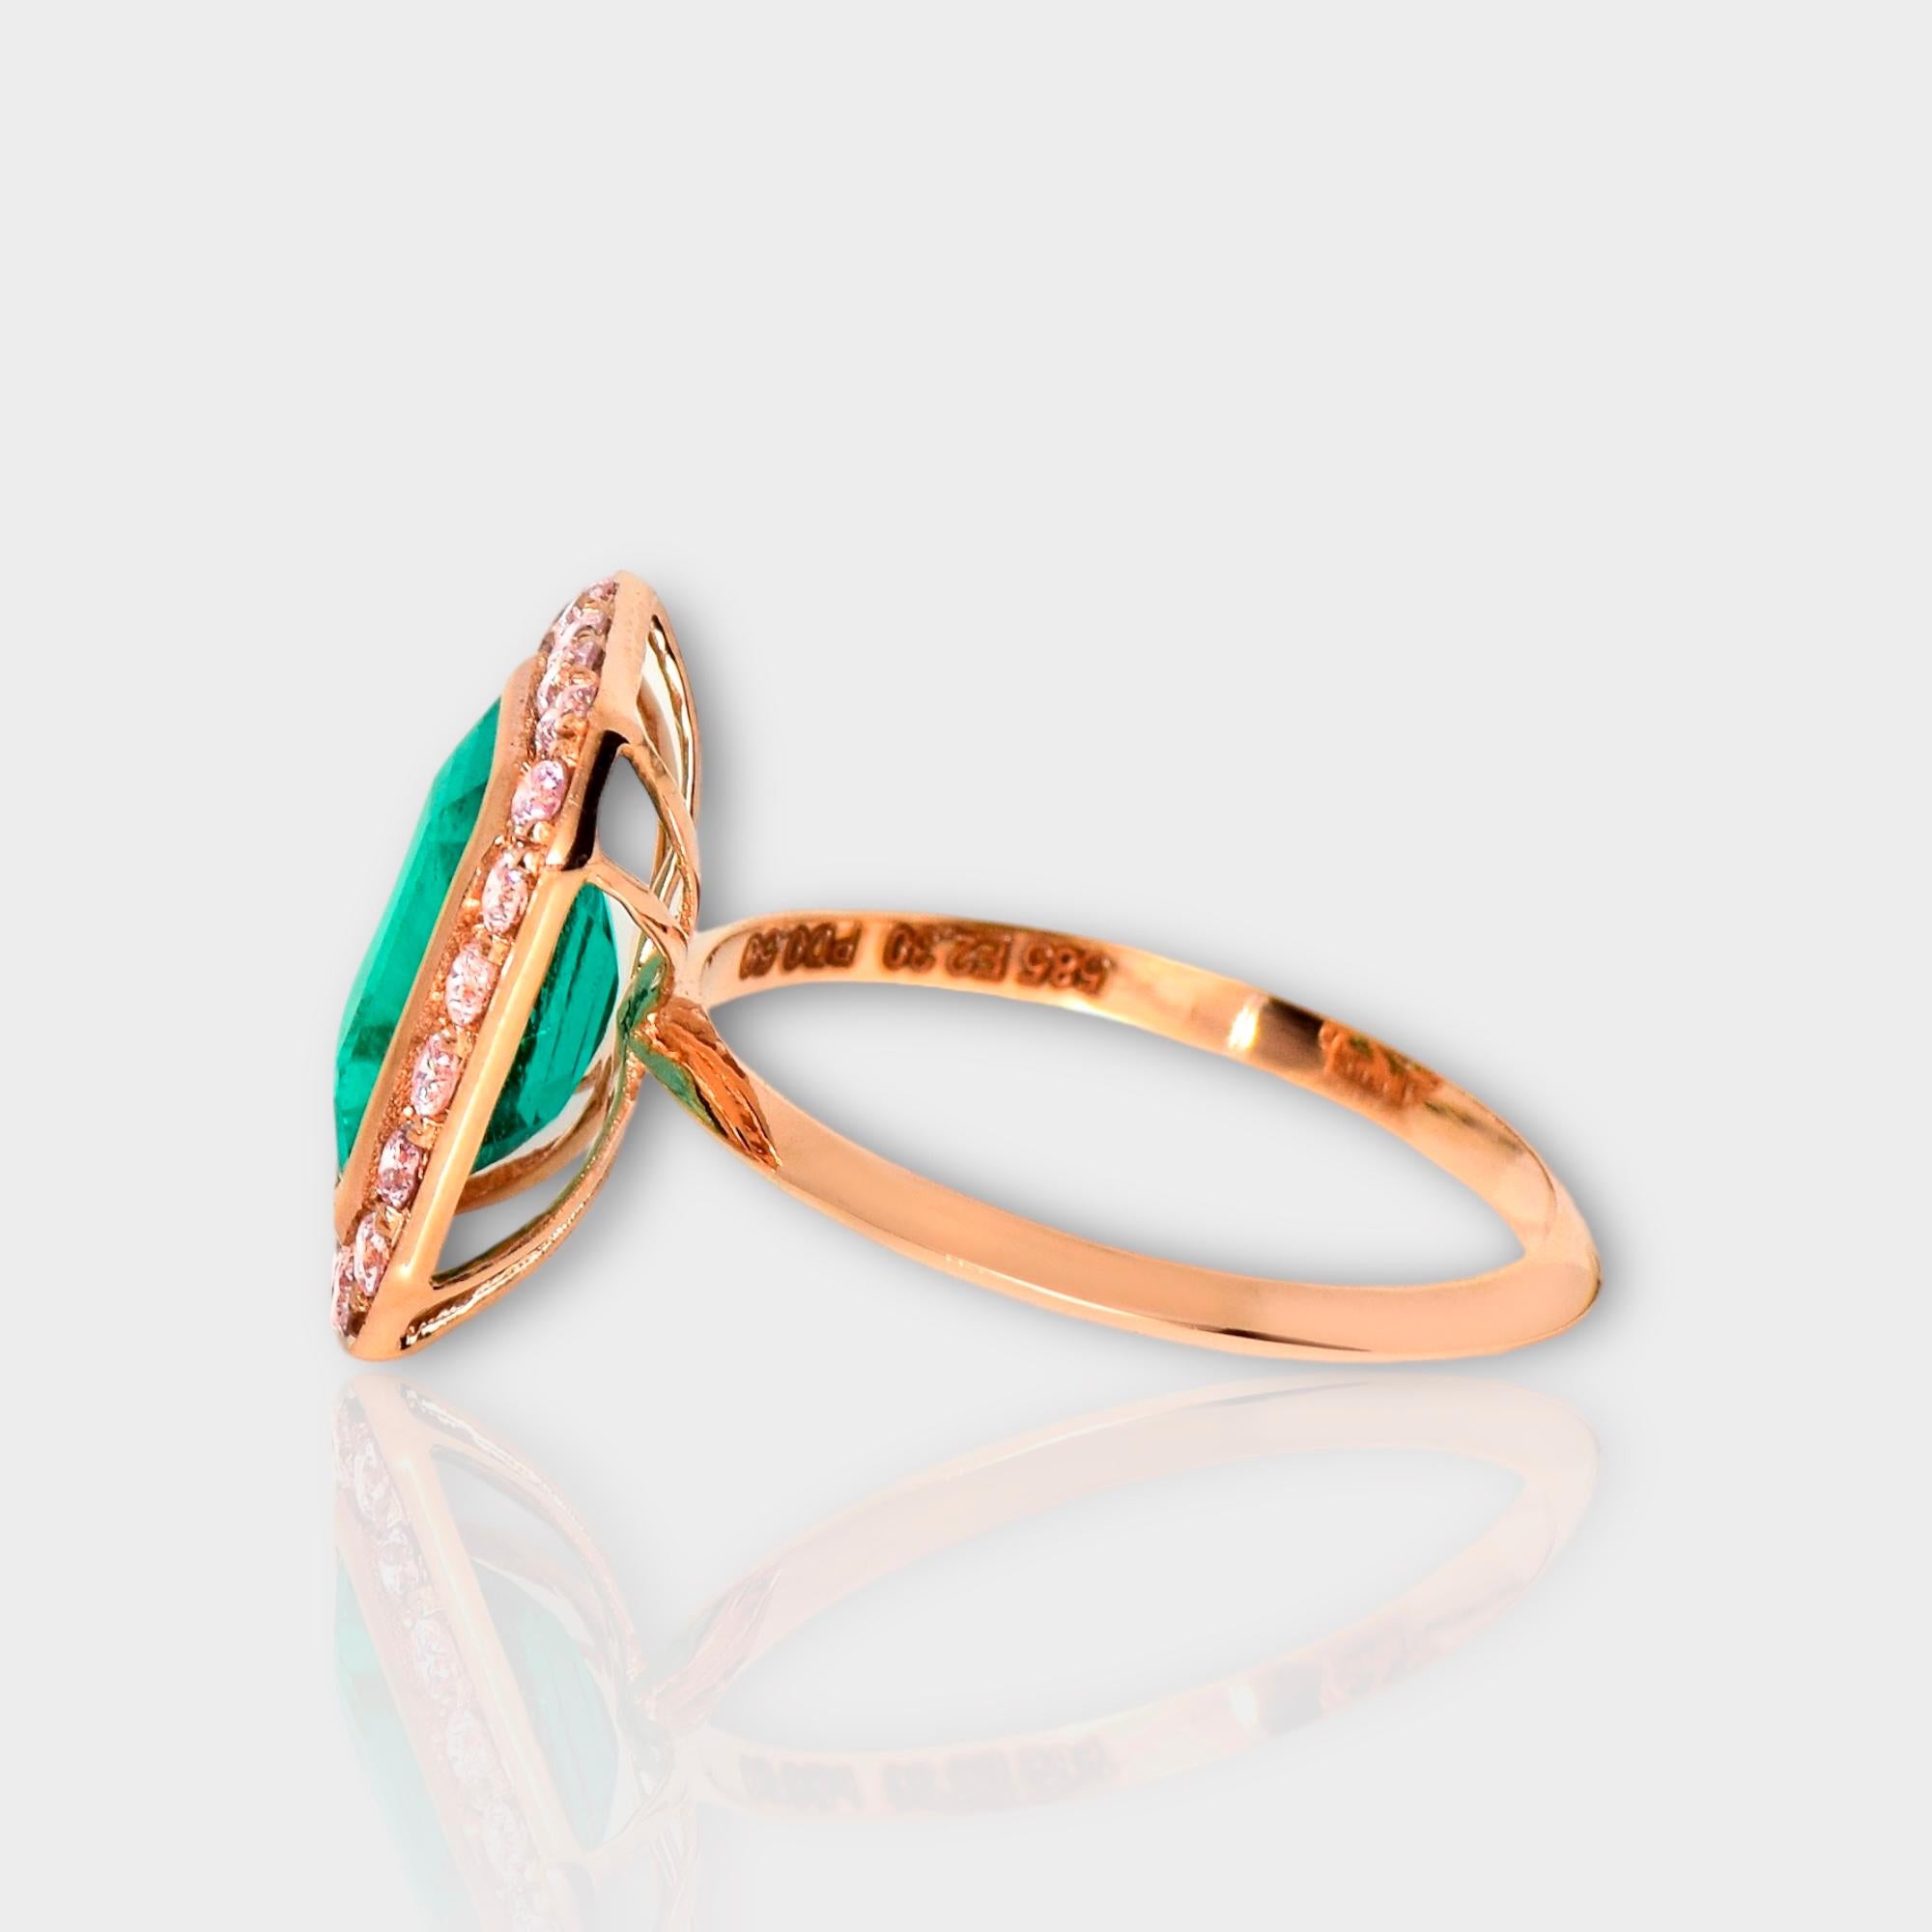 Women's or Men's IGI 14K 2.30 ct Natural Green Emerald&Pink Diamond Engagement Ring